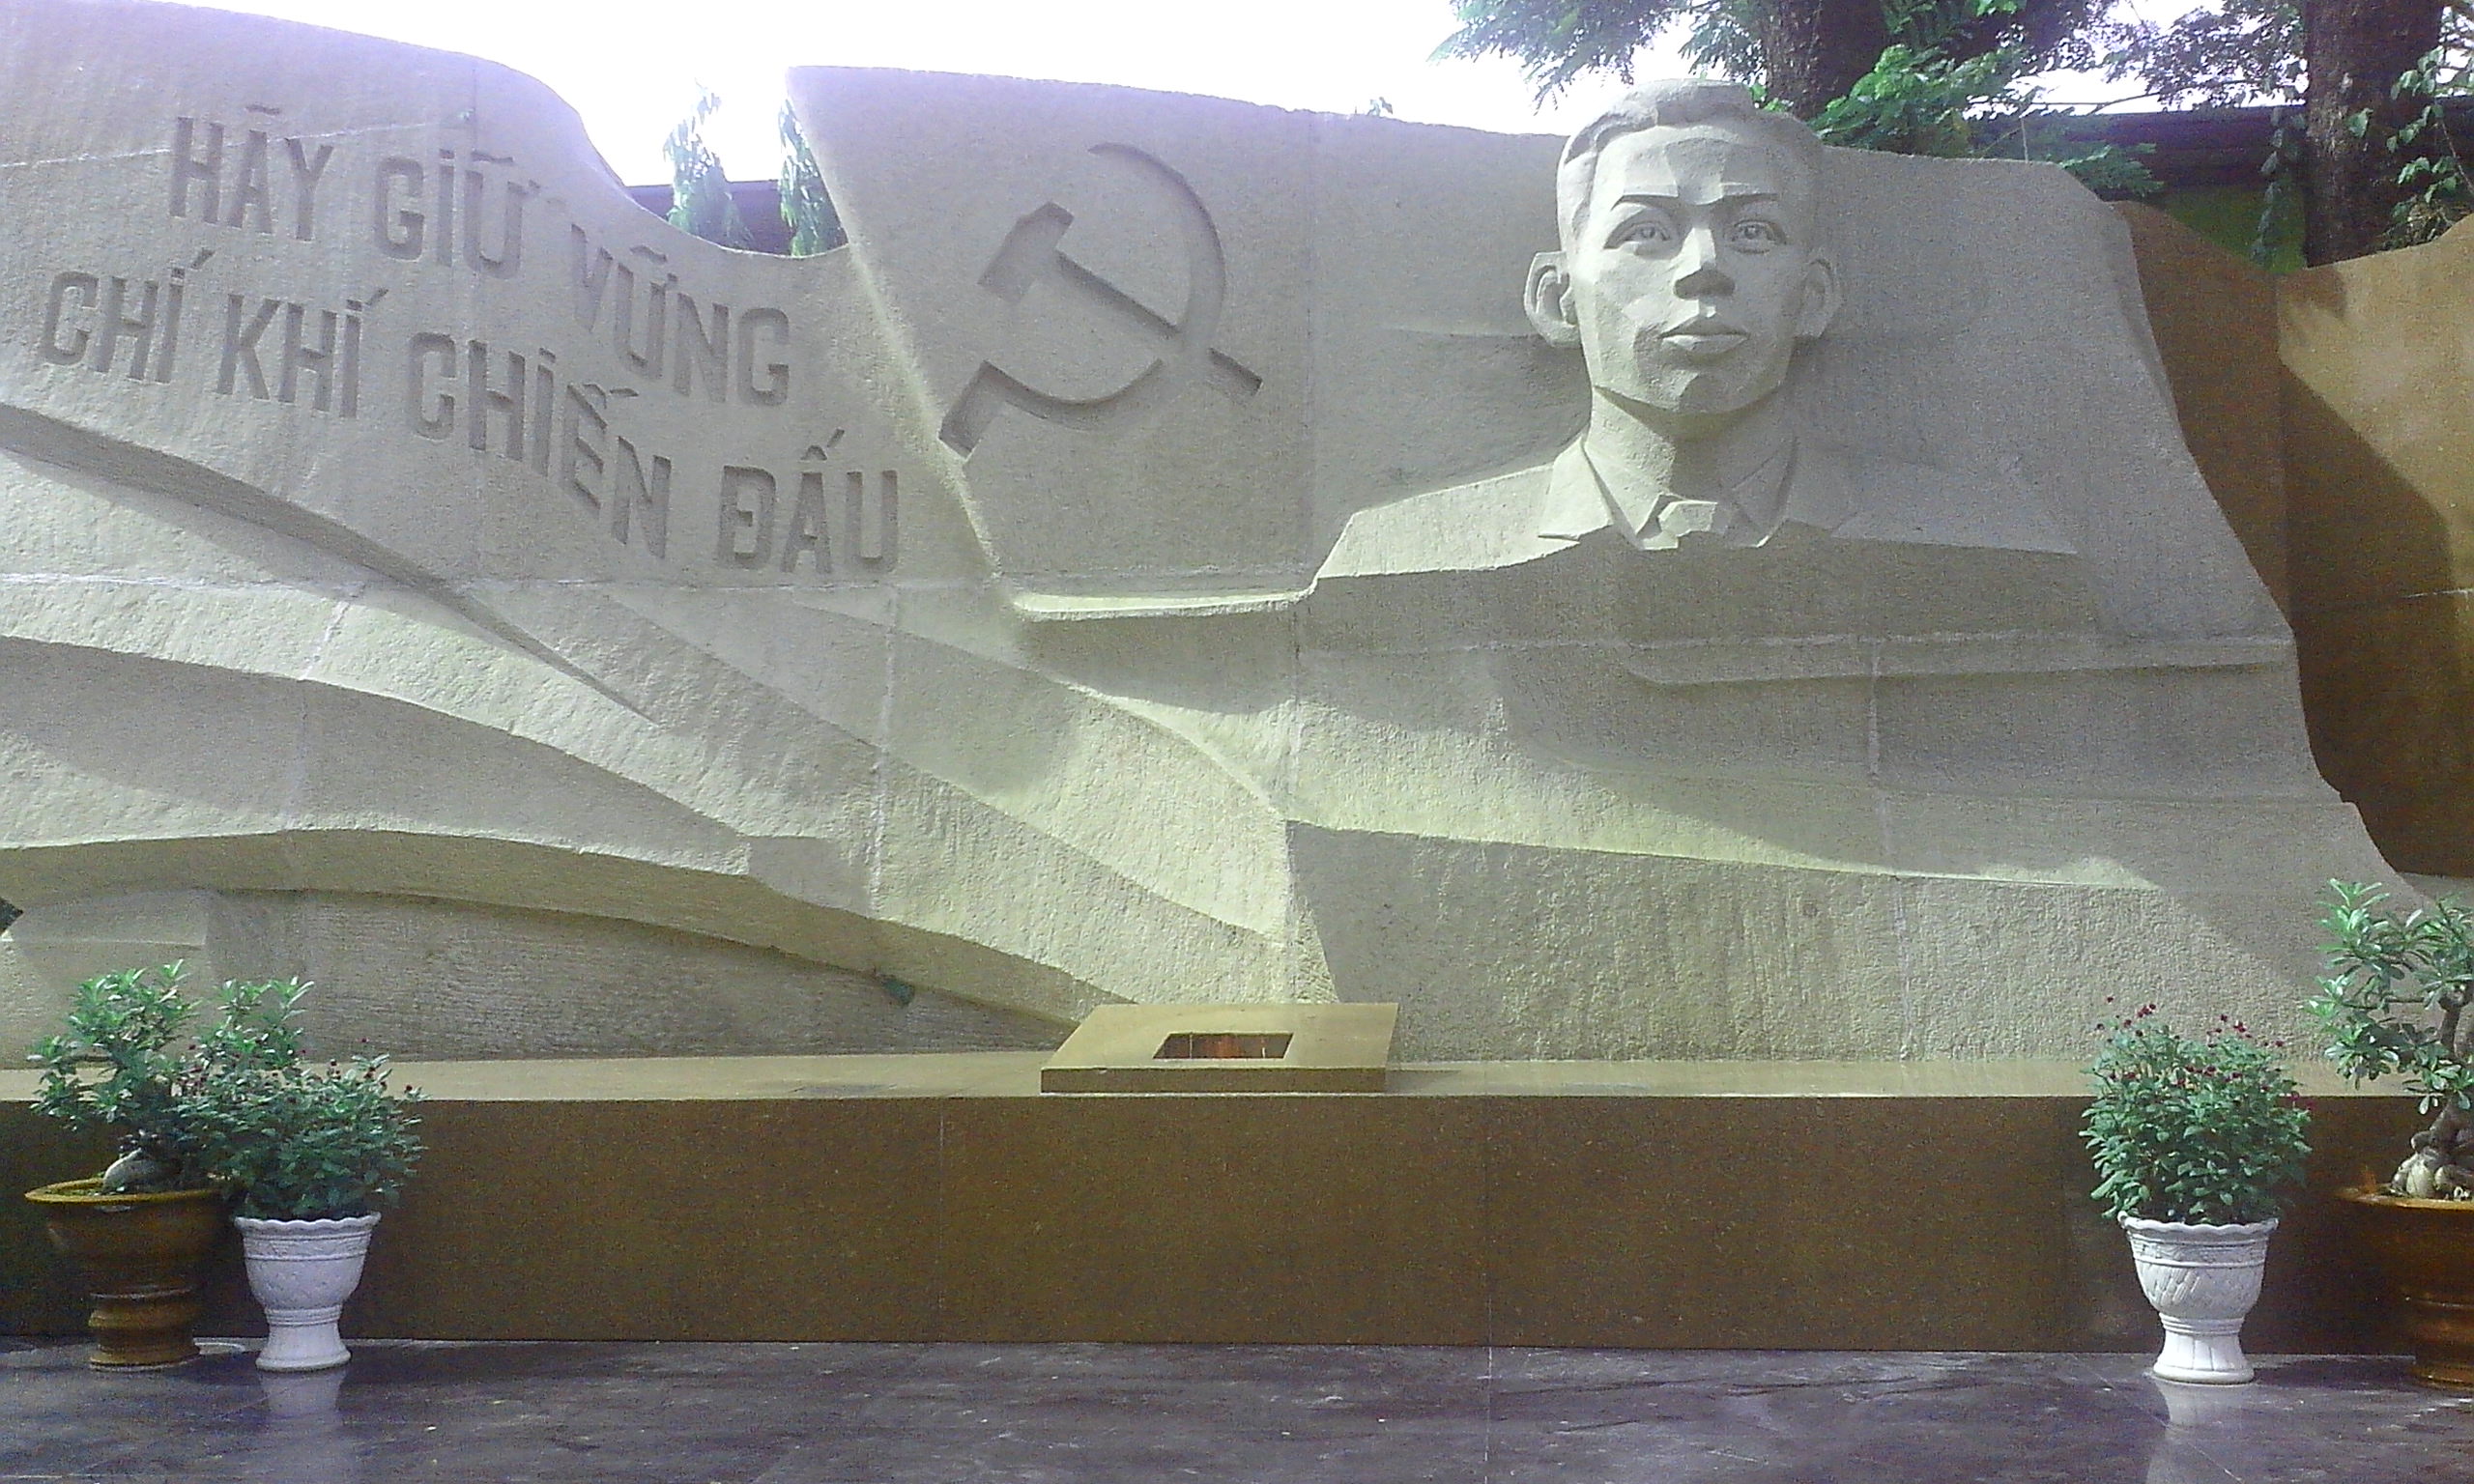 Đồng chí Trần Phú (1904 - 1931) quê ở xã Tùng Ảnh, huyện Đức Thọ, tỉnh Hà Tĩnh. Đồng chí Trần Phú được bầu làm Tổng Bí thư đầu tiên của Đảng Cộng sản Việt Nam từ ngày 27/10/1930 – 6/9/1931. 